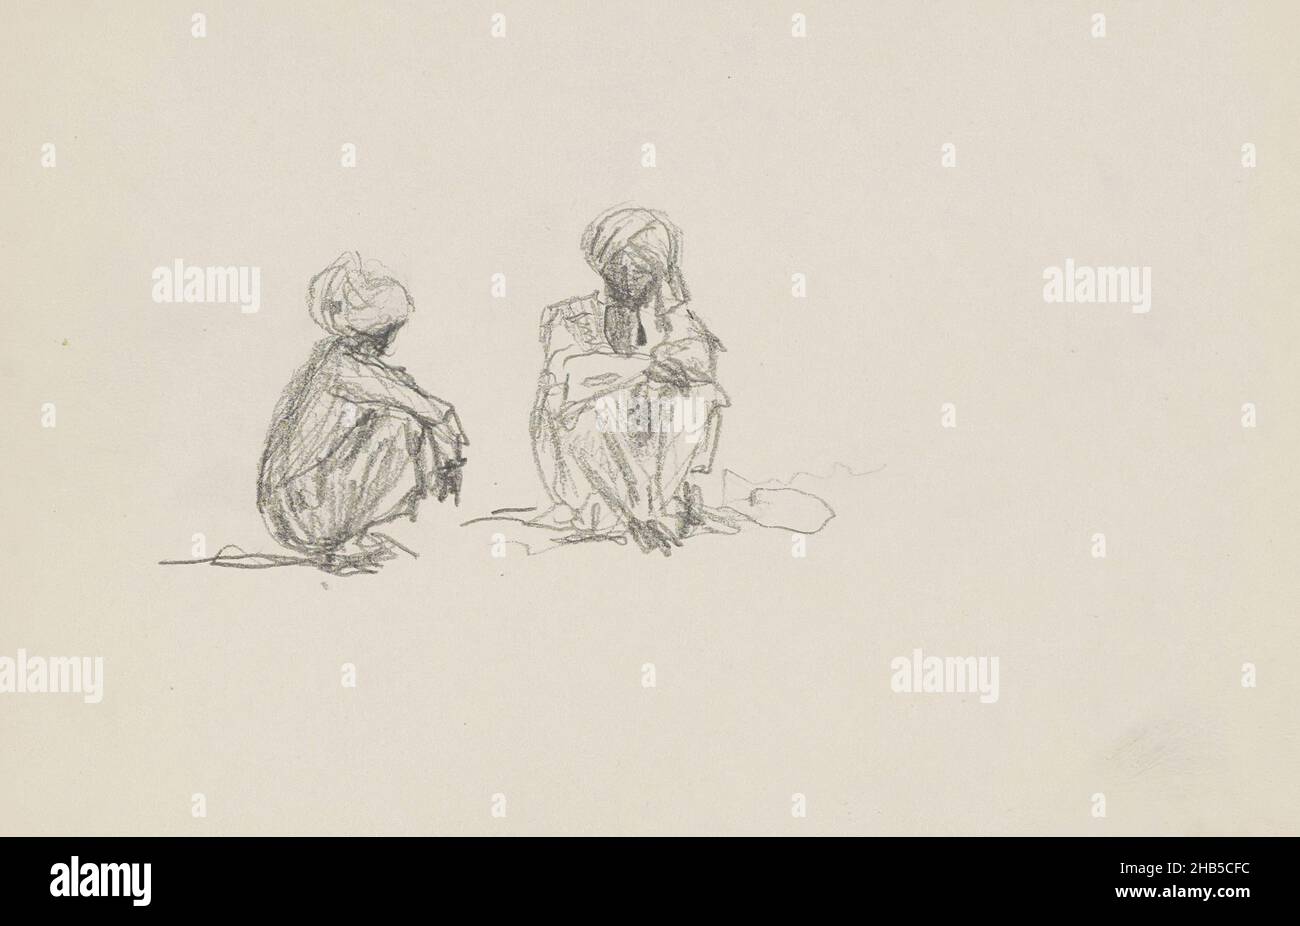 Gli uomini indossano turbanti. Pagina 11 da un libro di 15 pagine., due uomini indiani seduti, disegnatore: Marius Bauer, India, 1925, Marius Bauer, 1925 Foto Stock